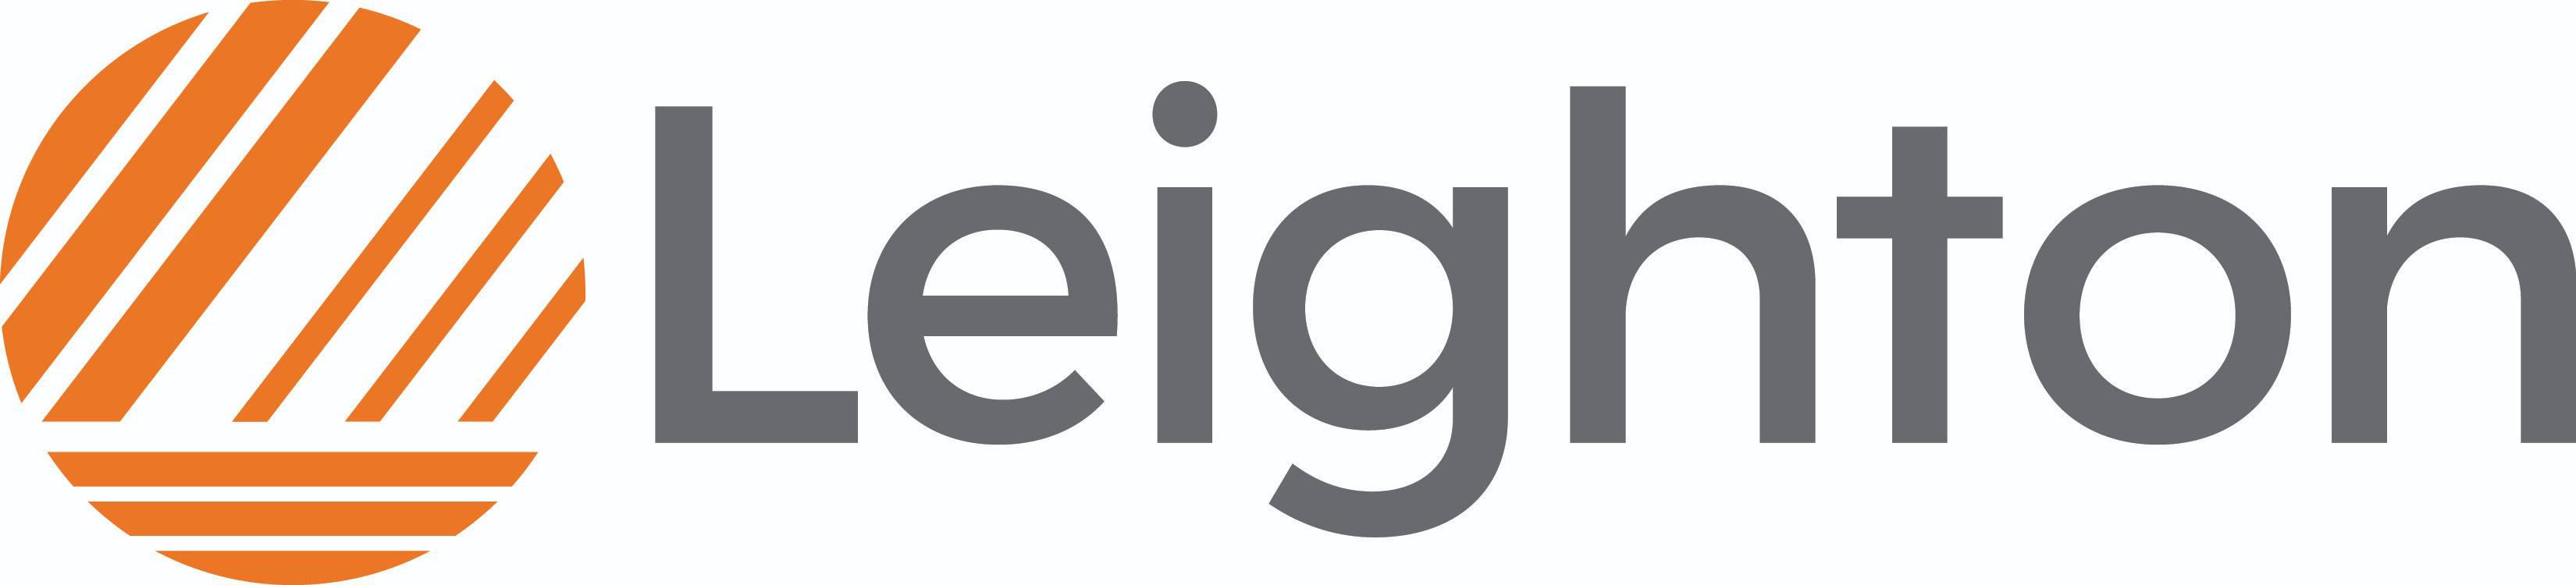 Leighton logo